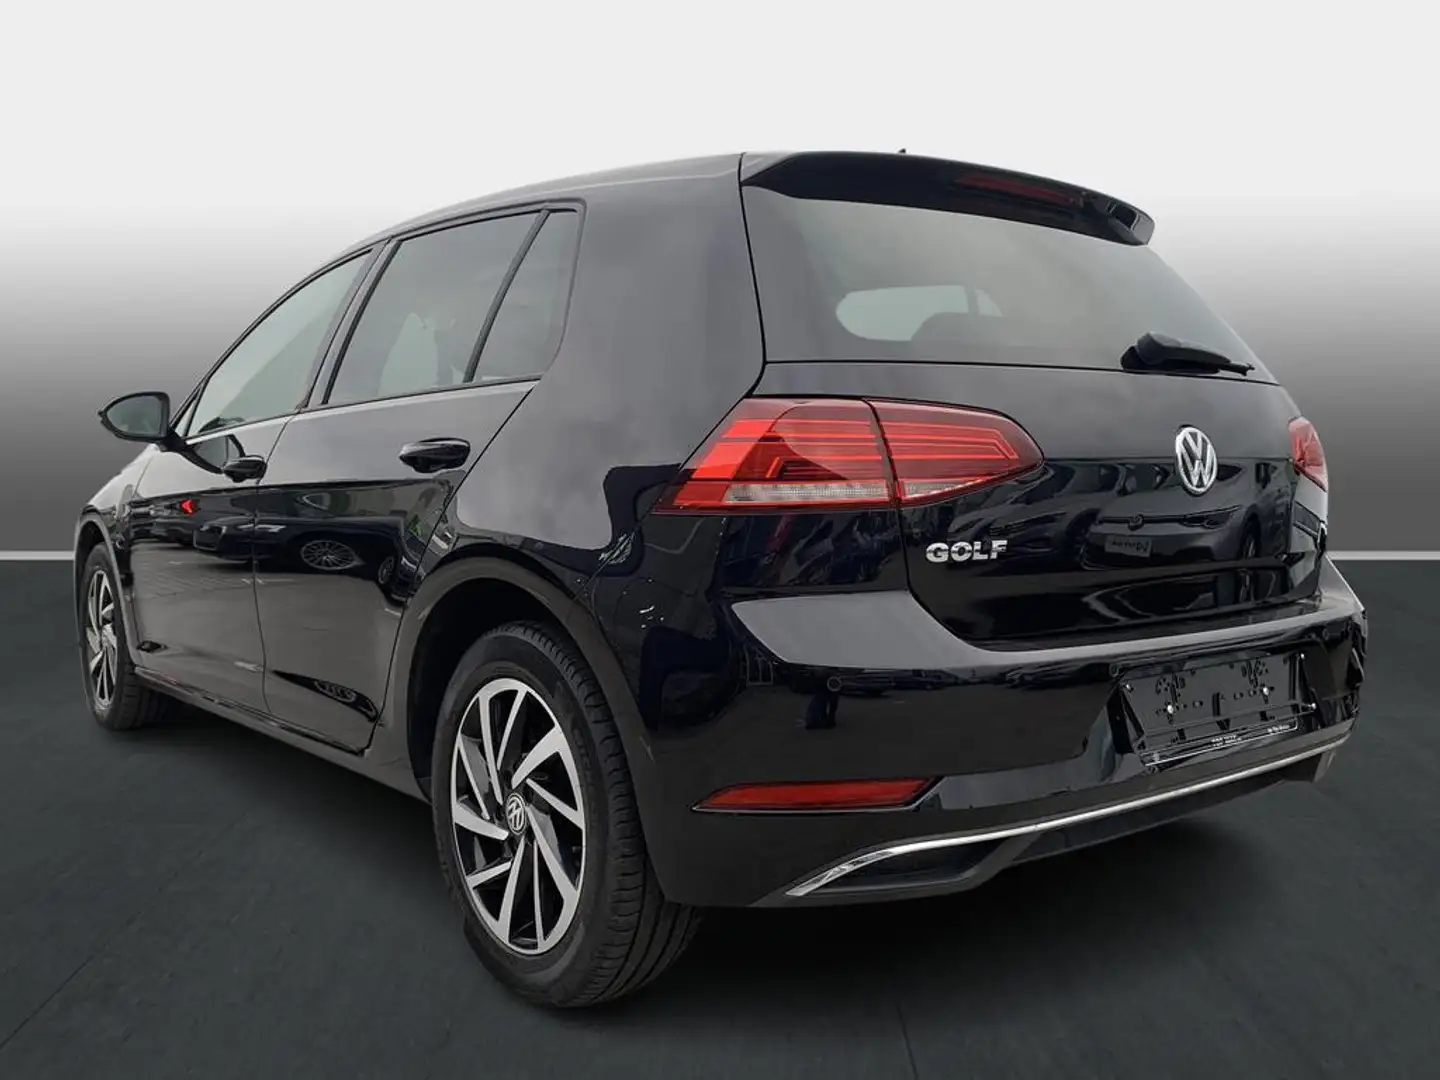 Volkswagen Golf NAVI*APS VR + ACHTER*1.6 TDI 115 pk Negro - 2